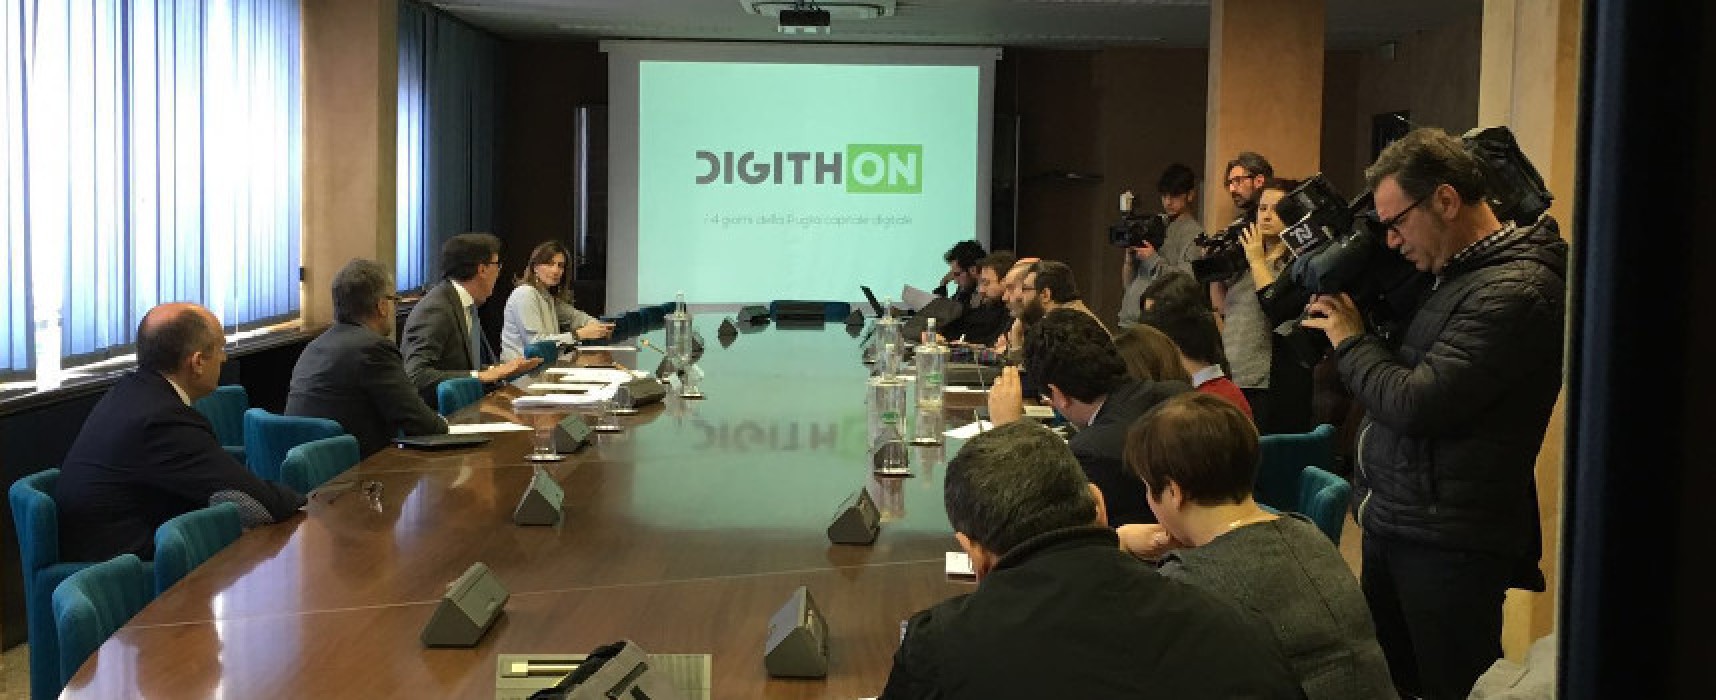 DigithON, la maratona delle idee digitali, promuove “Android Factory 4.0” / DETTAGLI